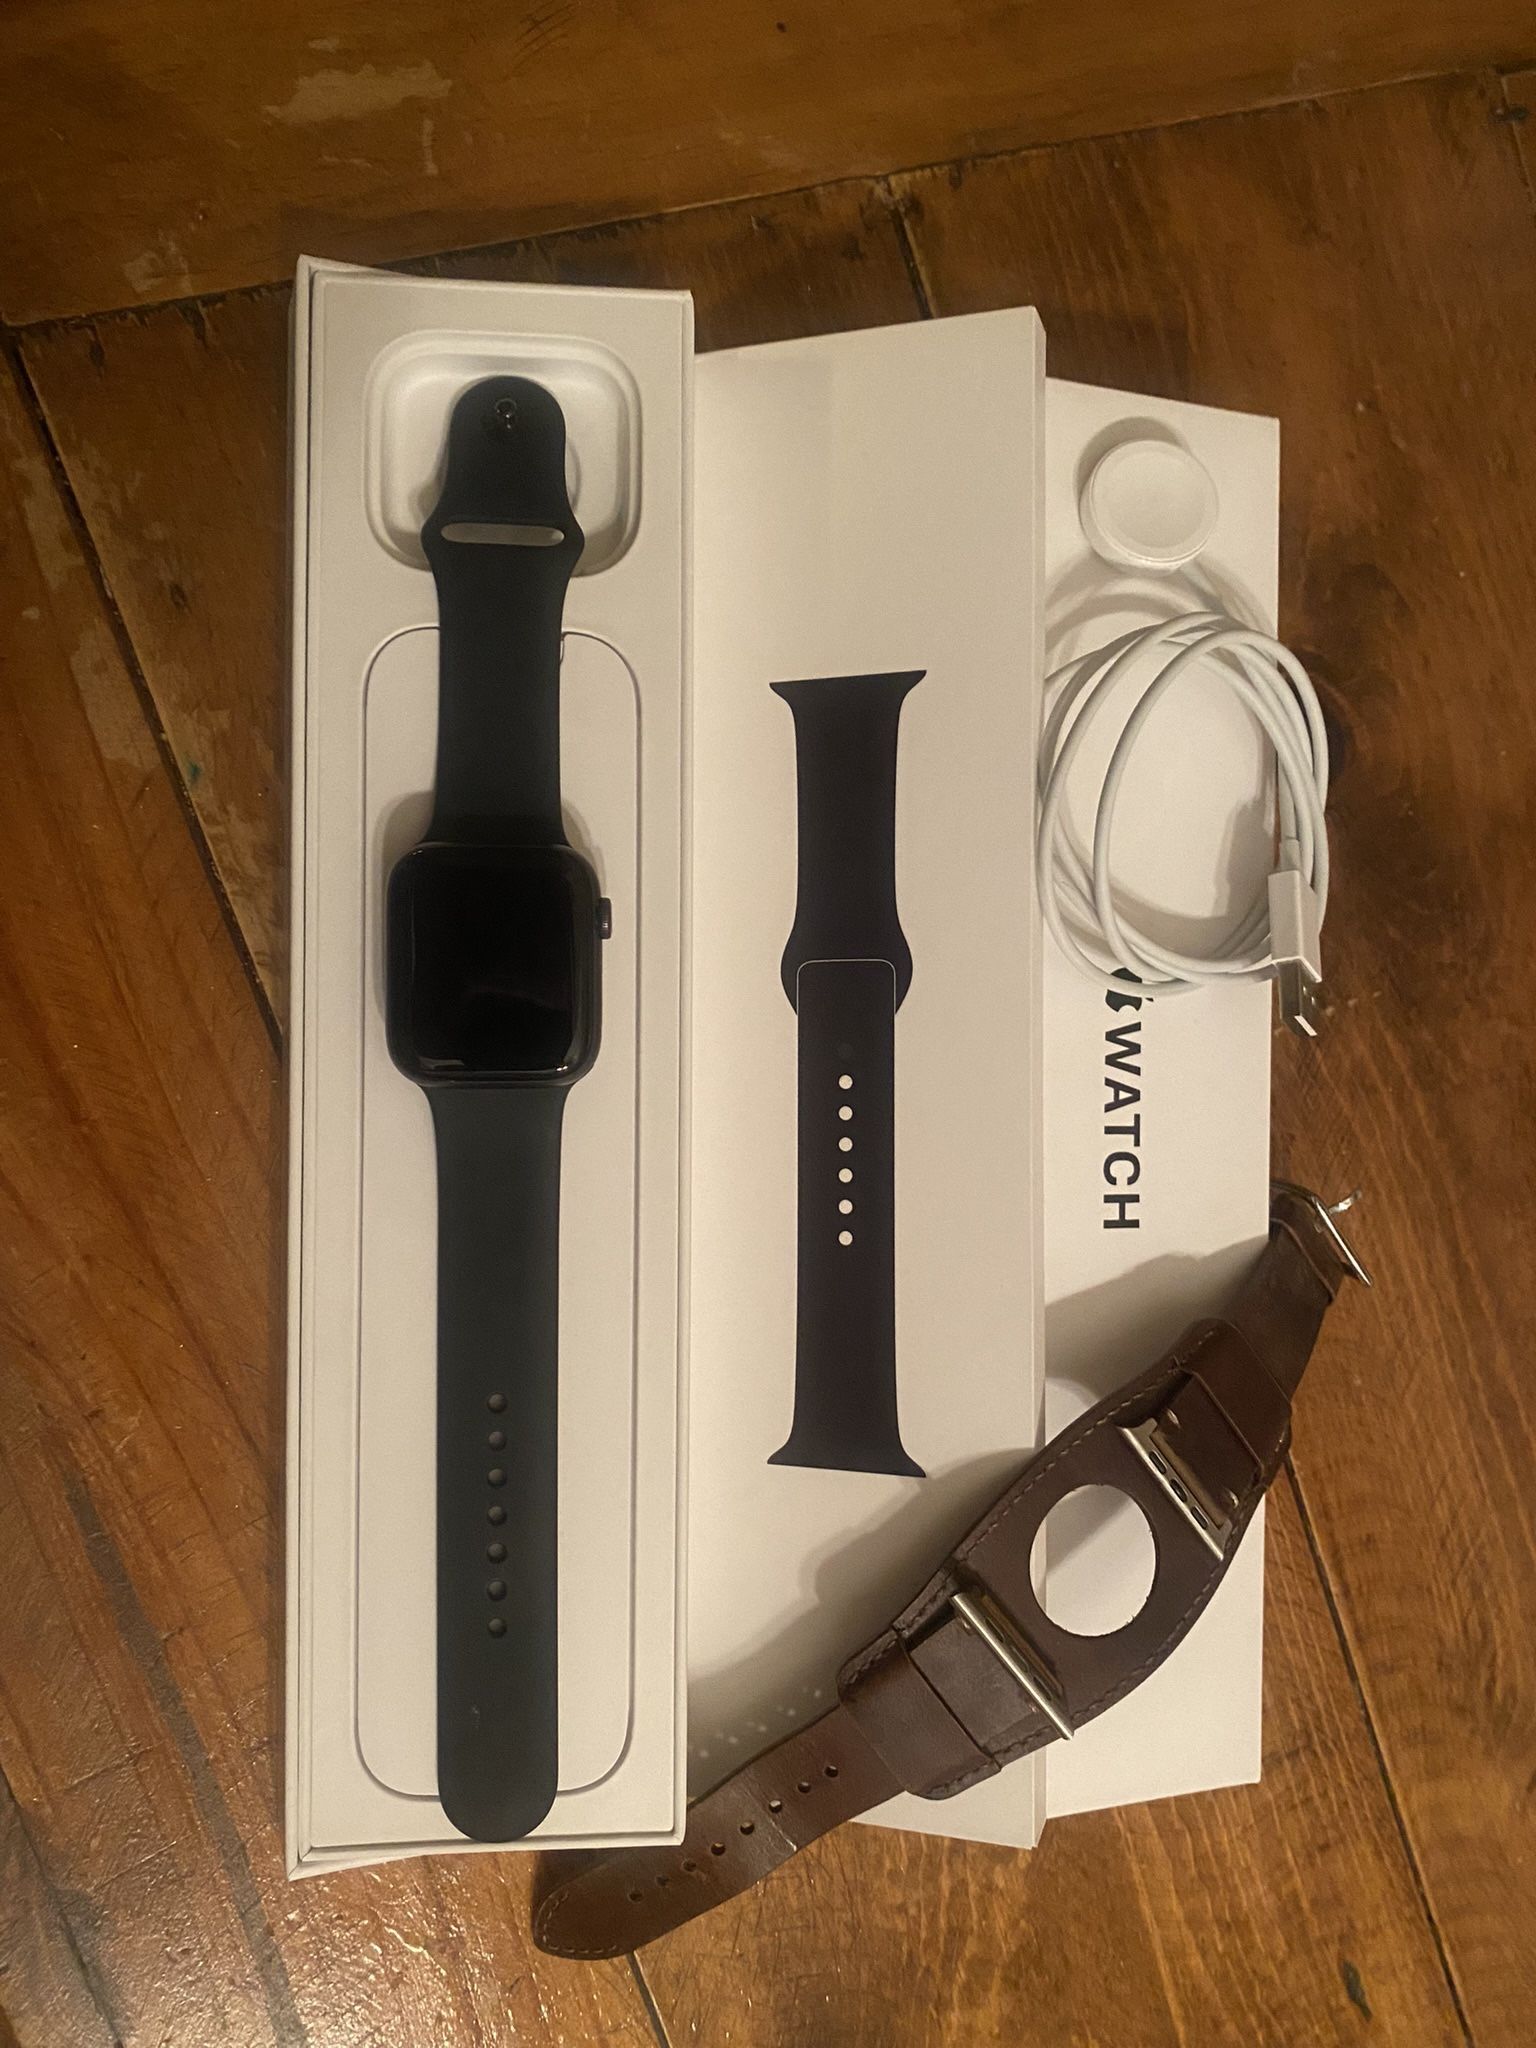 Apple Watch SE $140